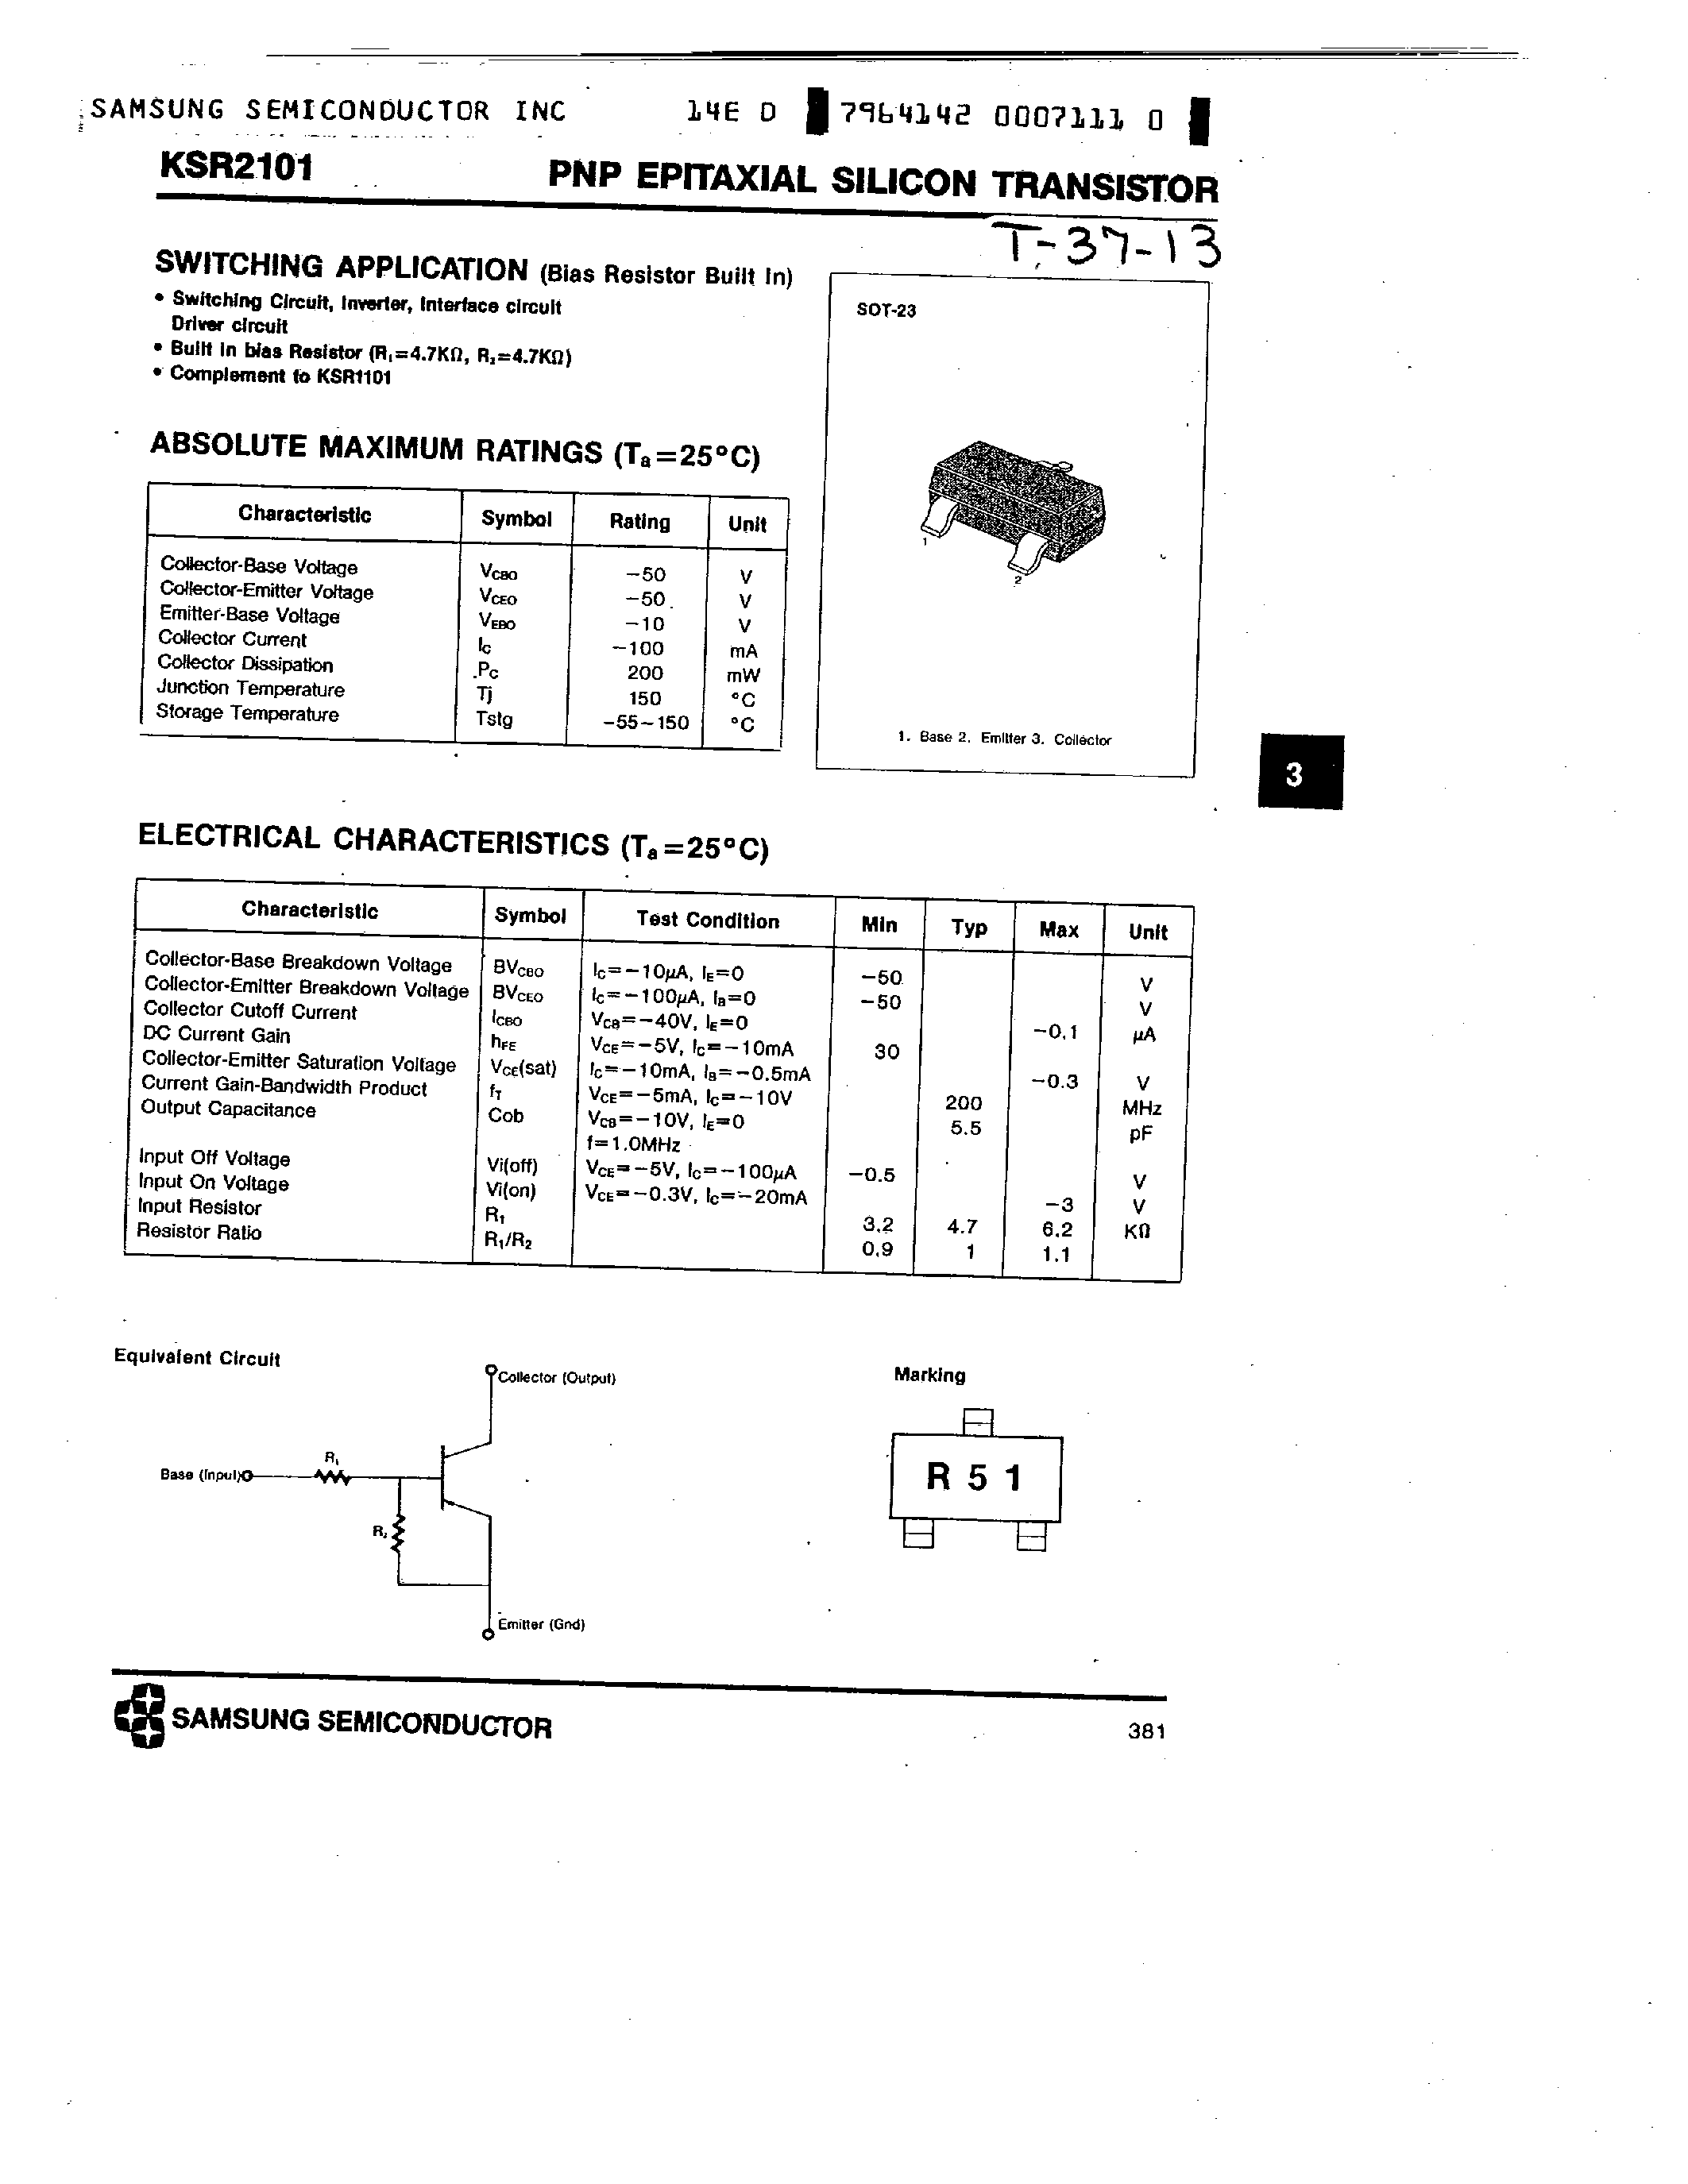 Datasheet KSR2101 - PNP (SWITCHING APPLICATION) page 1